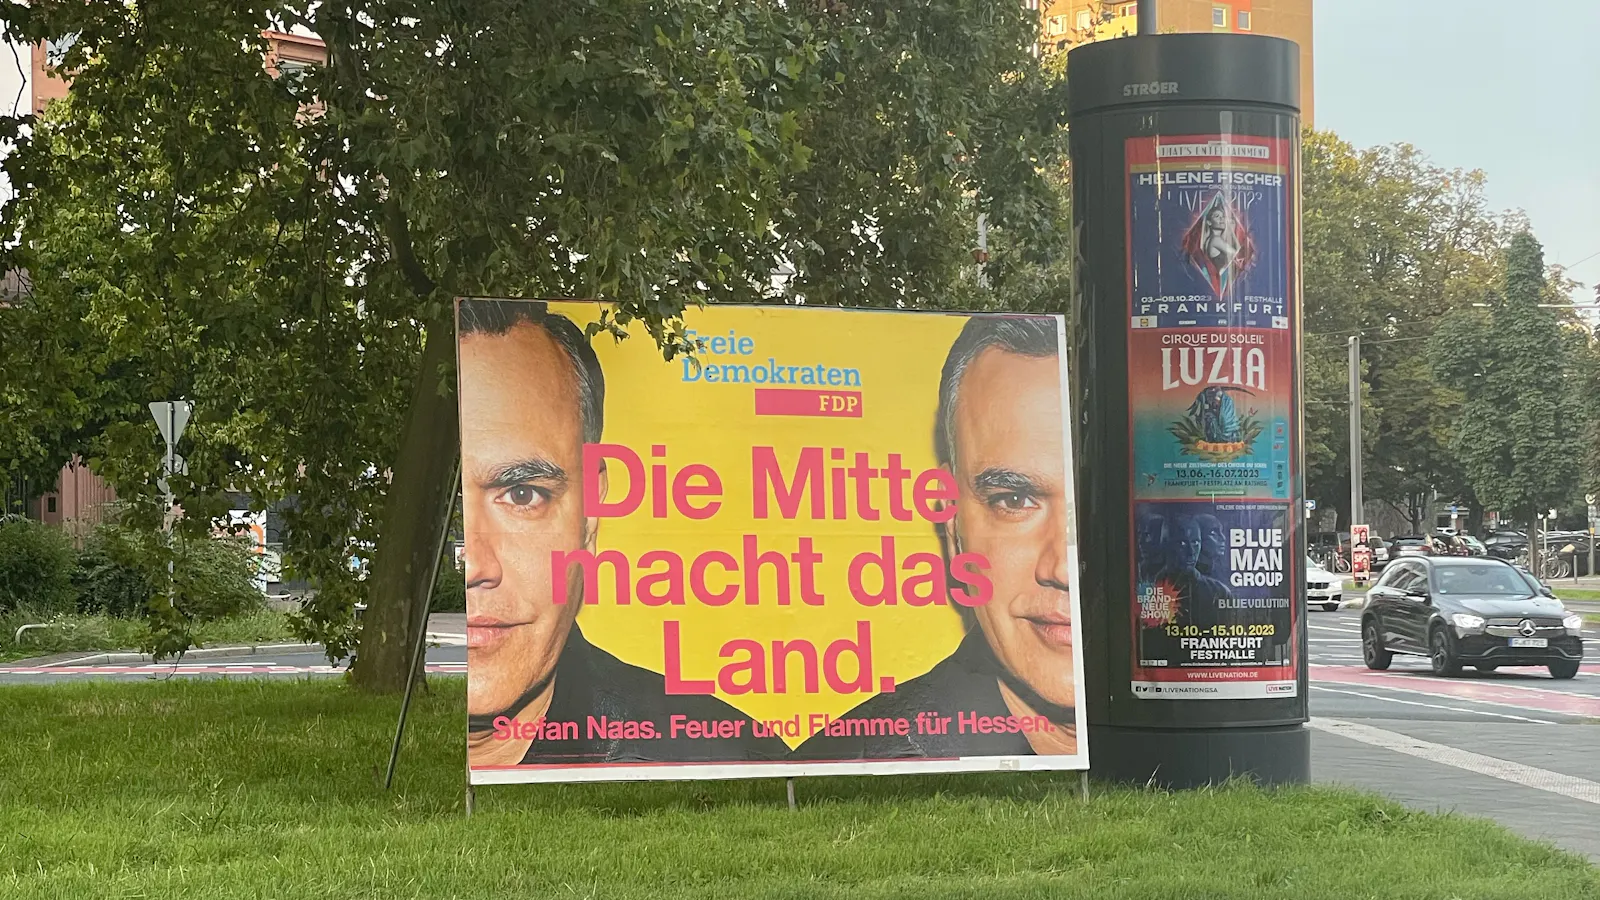 Die FDP Hessen plakatiert mit "Die Mitte macht das Land."